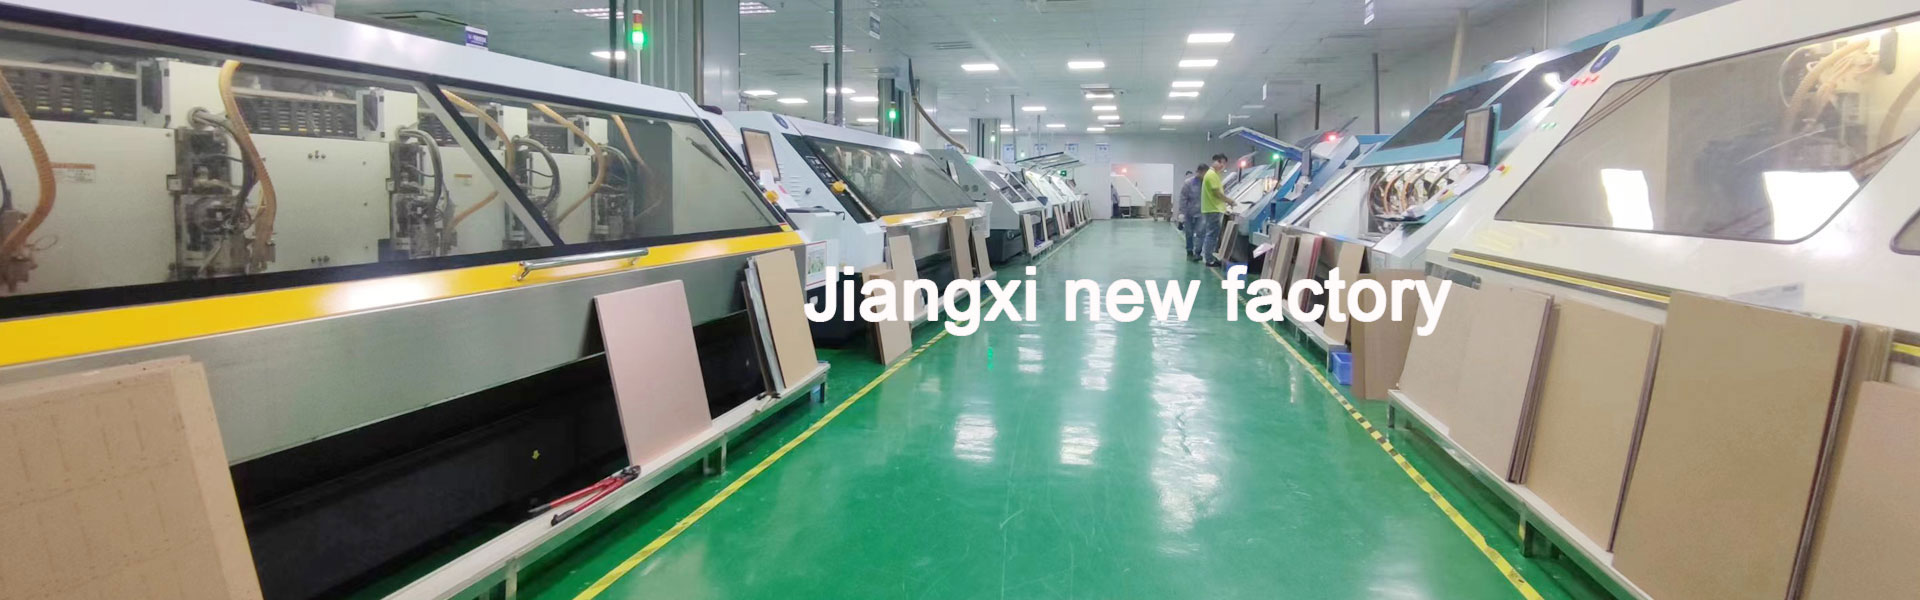 Jiangxi new factory begins